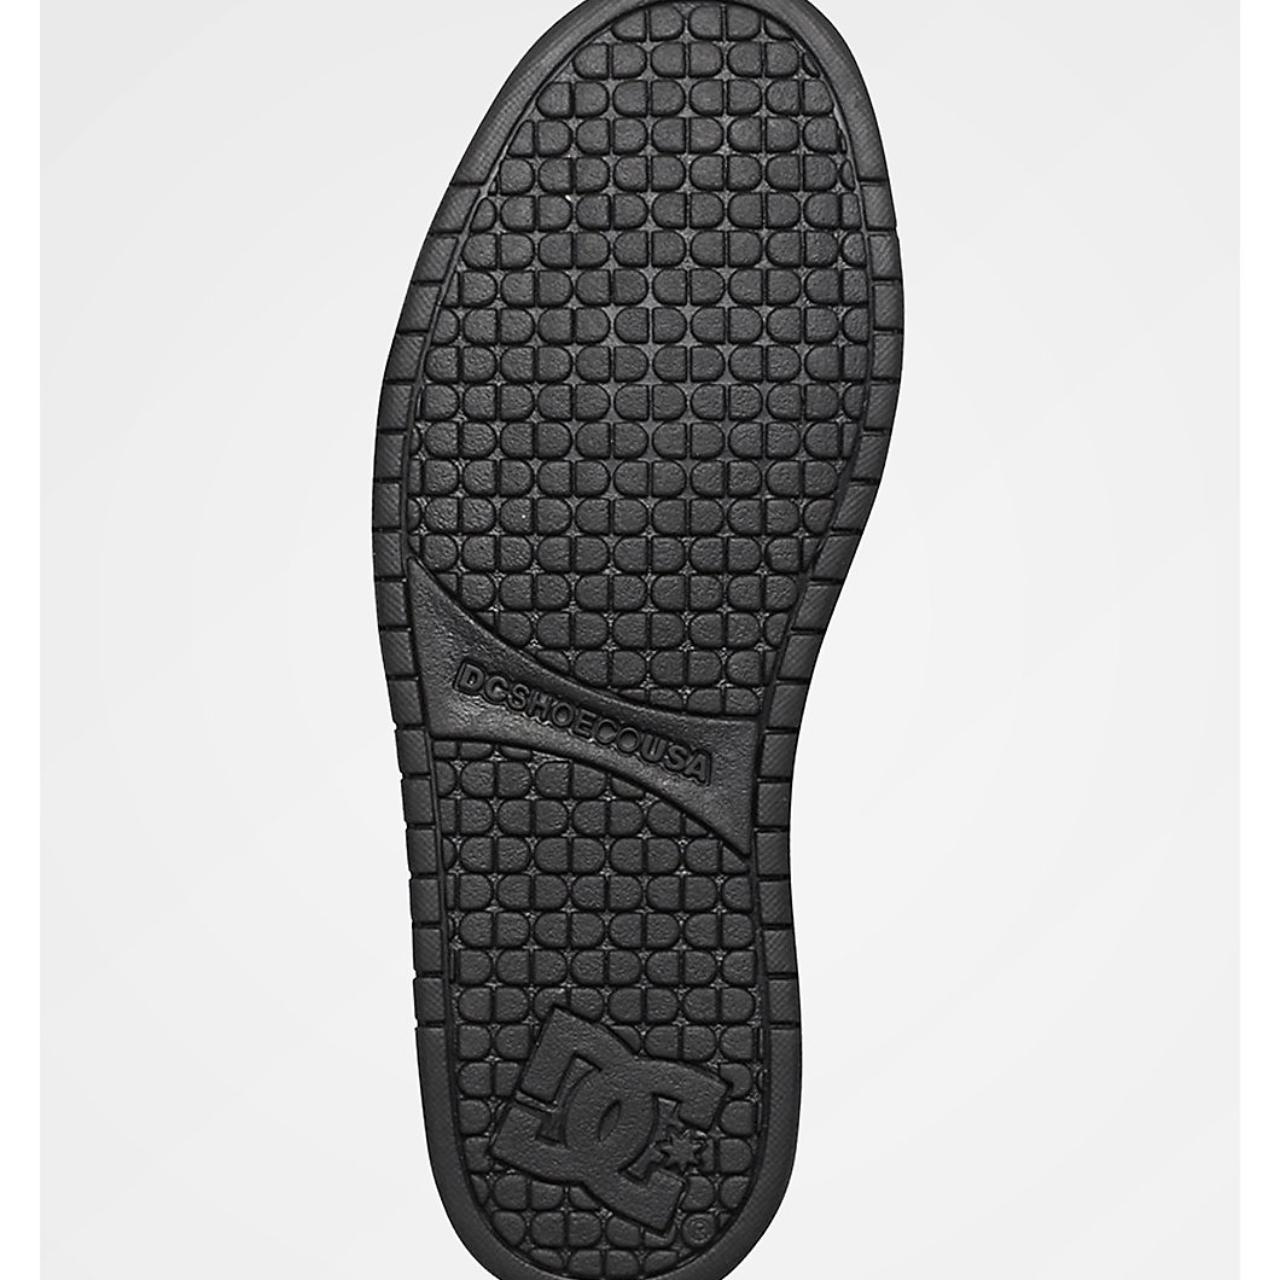 black dc shoes graffik, no laces no insole, size 9.5 - Depop